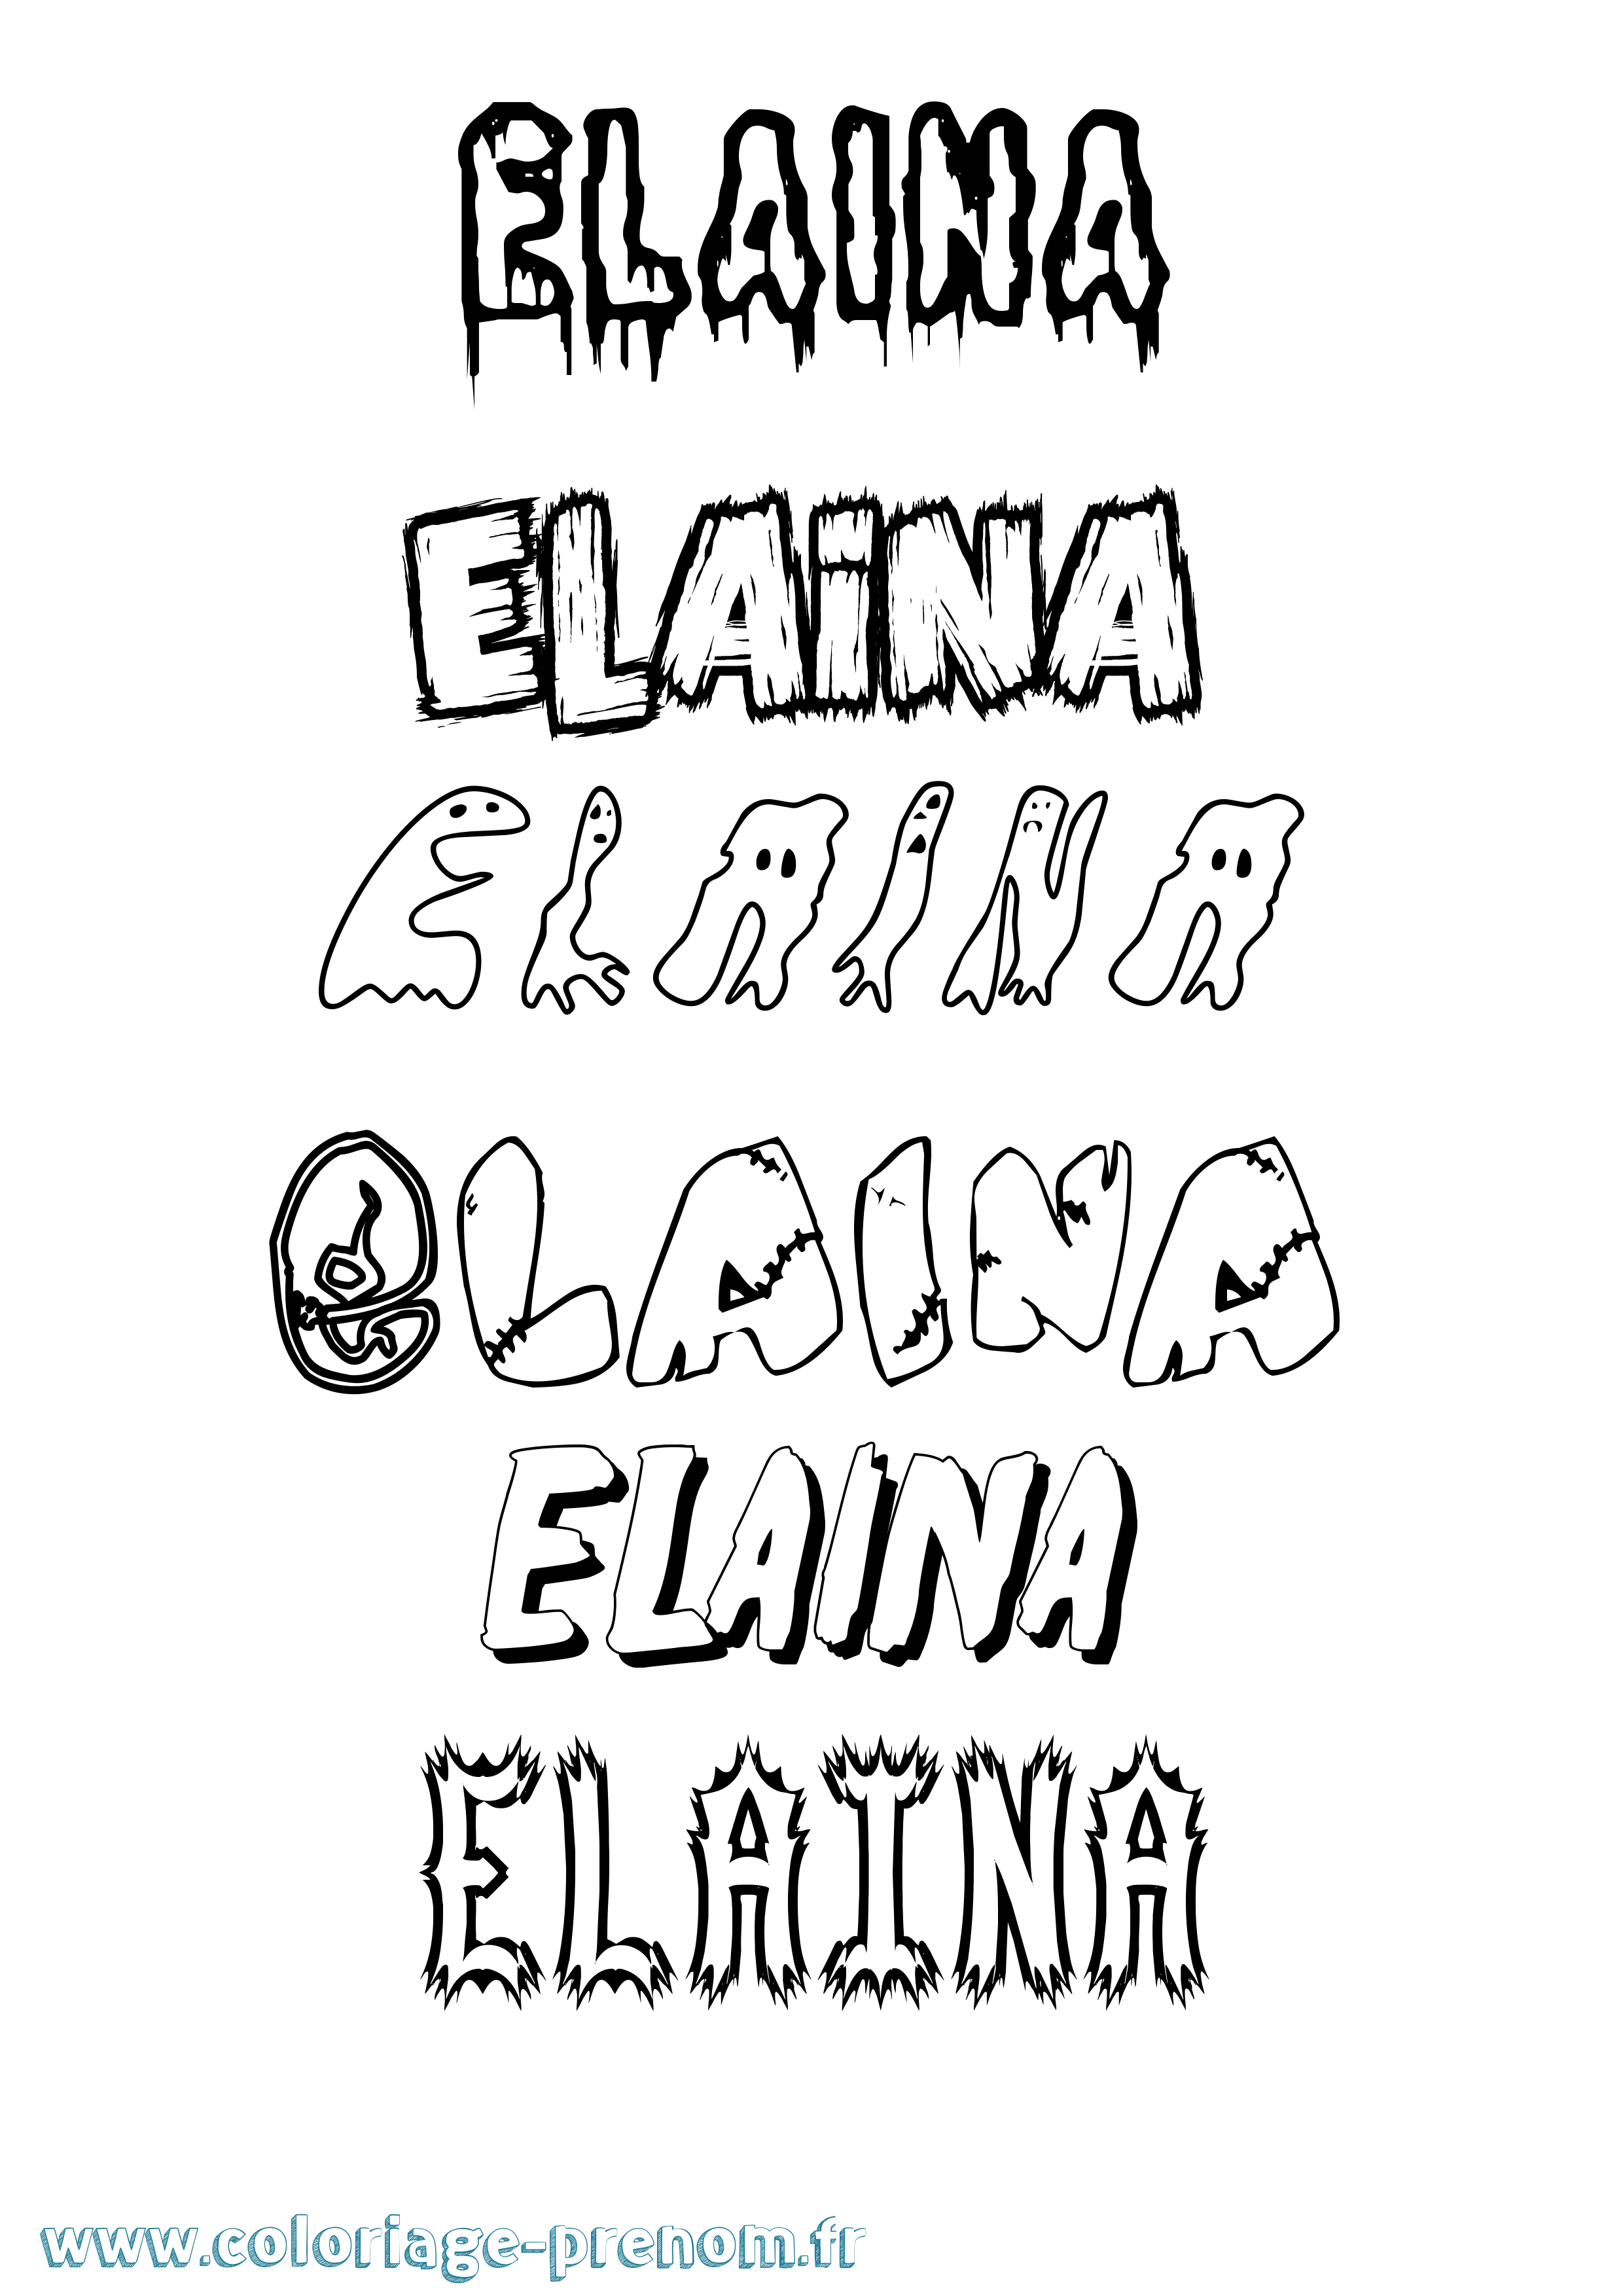 Coloriage prénom Elaina Frisson